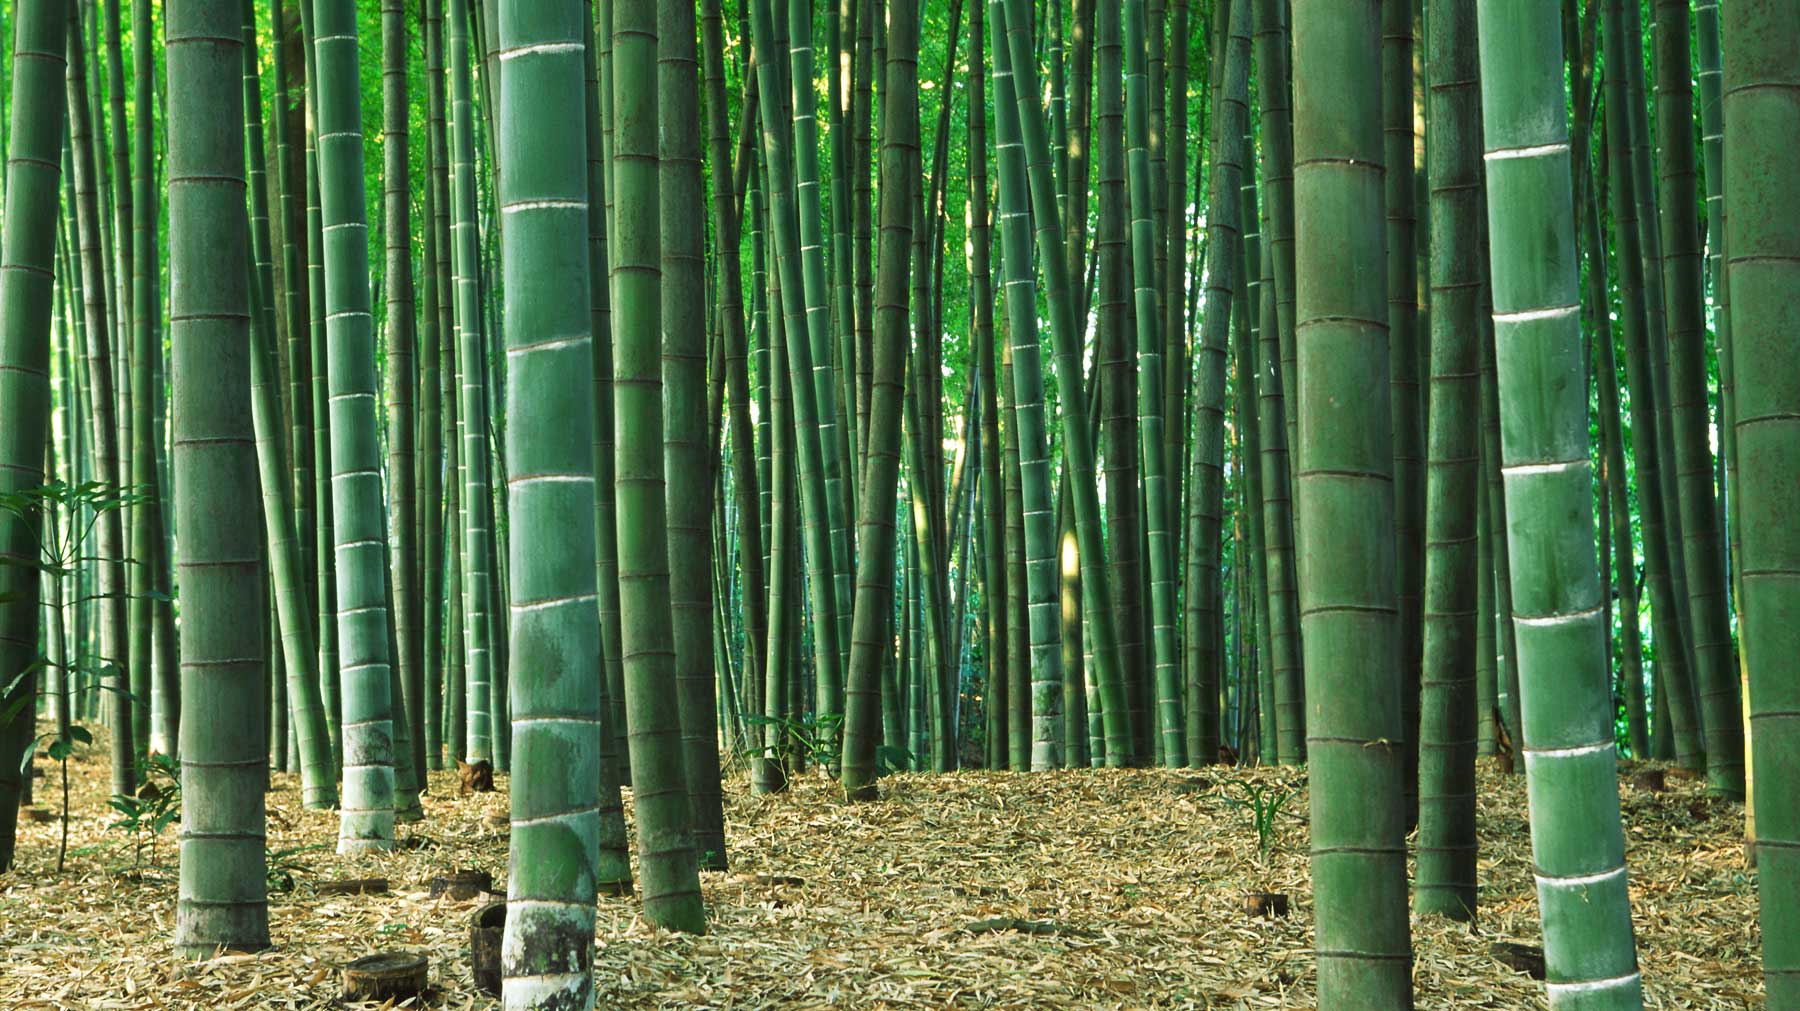 Ein dichter Bambuswald mit sonnendurchfluteten, hohen grünen Stämmen, der die natürliche Schönheit und Robustheit von Bambusparkett symbolisiert